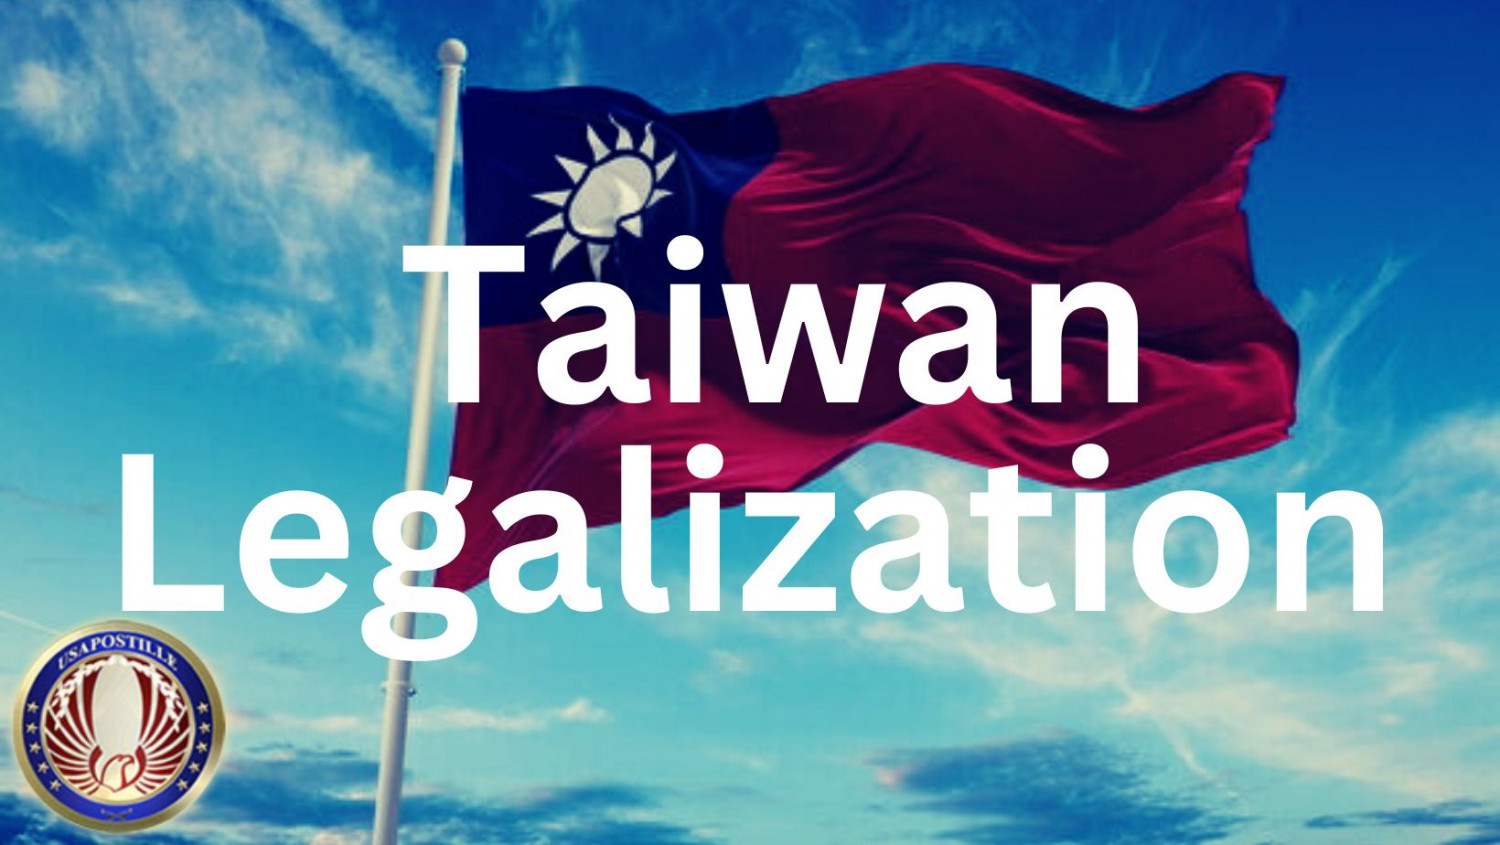 Taiwan legalization